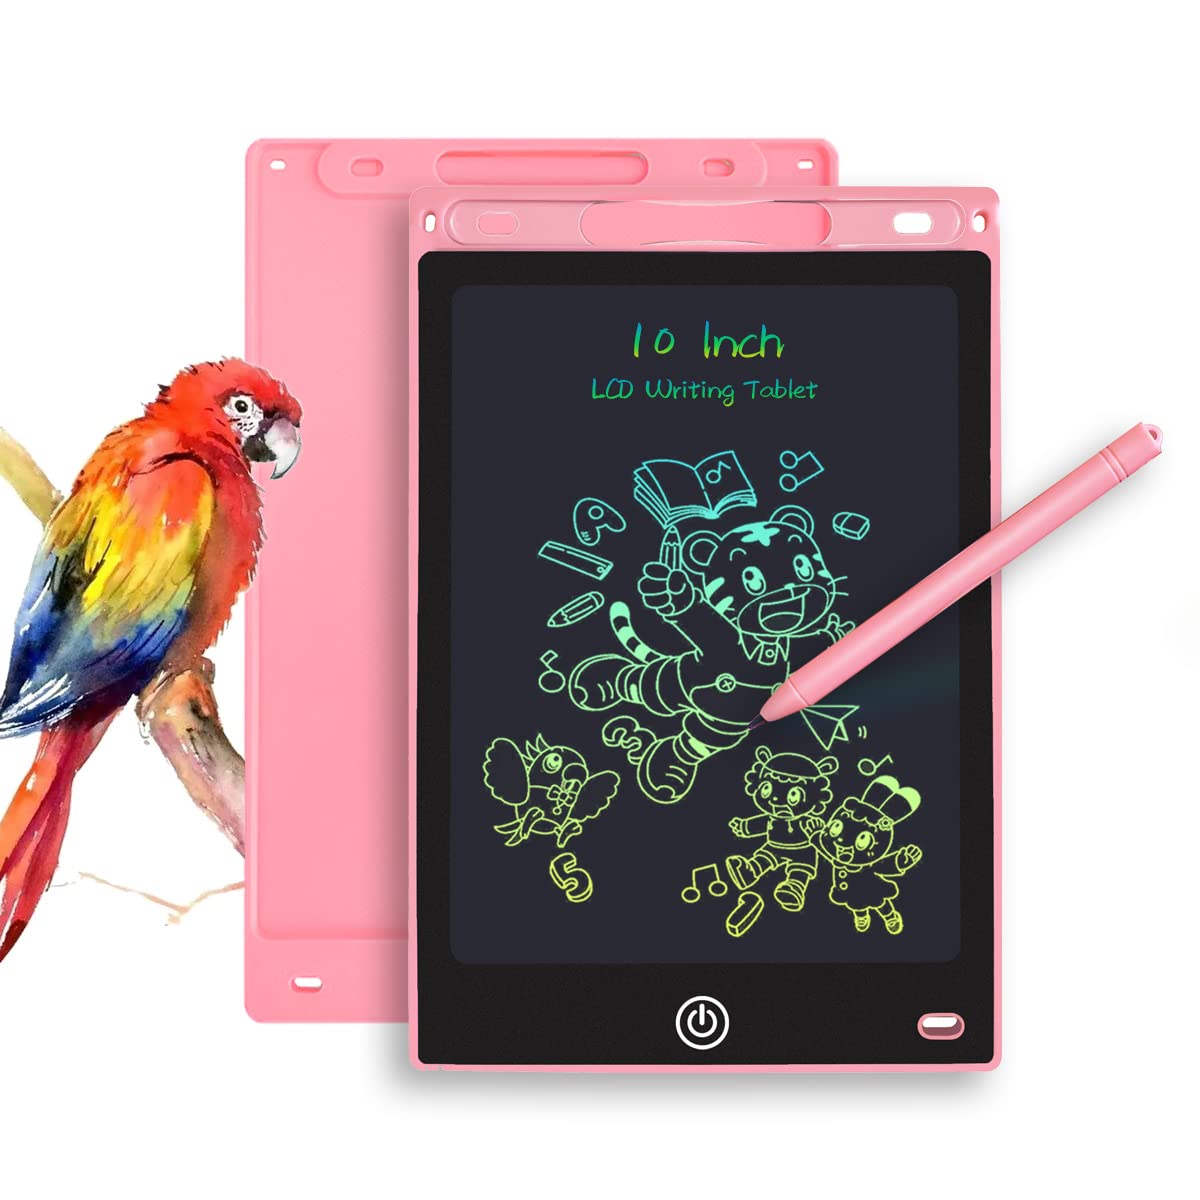 Tableta de dibujo con pantalla LCD de 10 pulgadas rosada